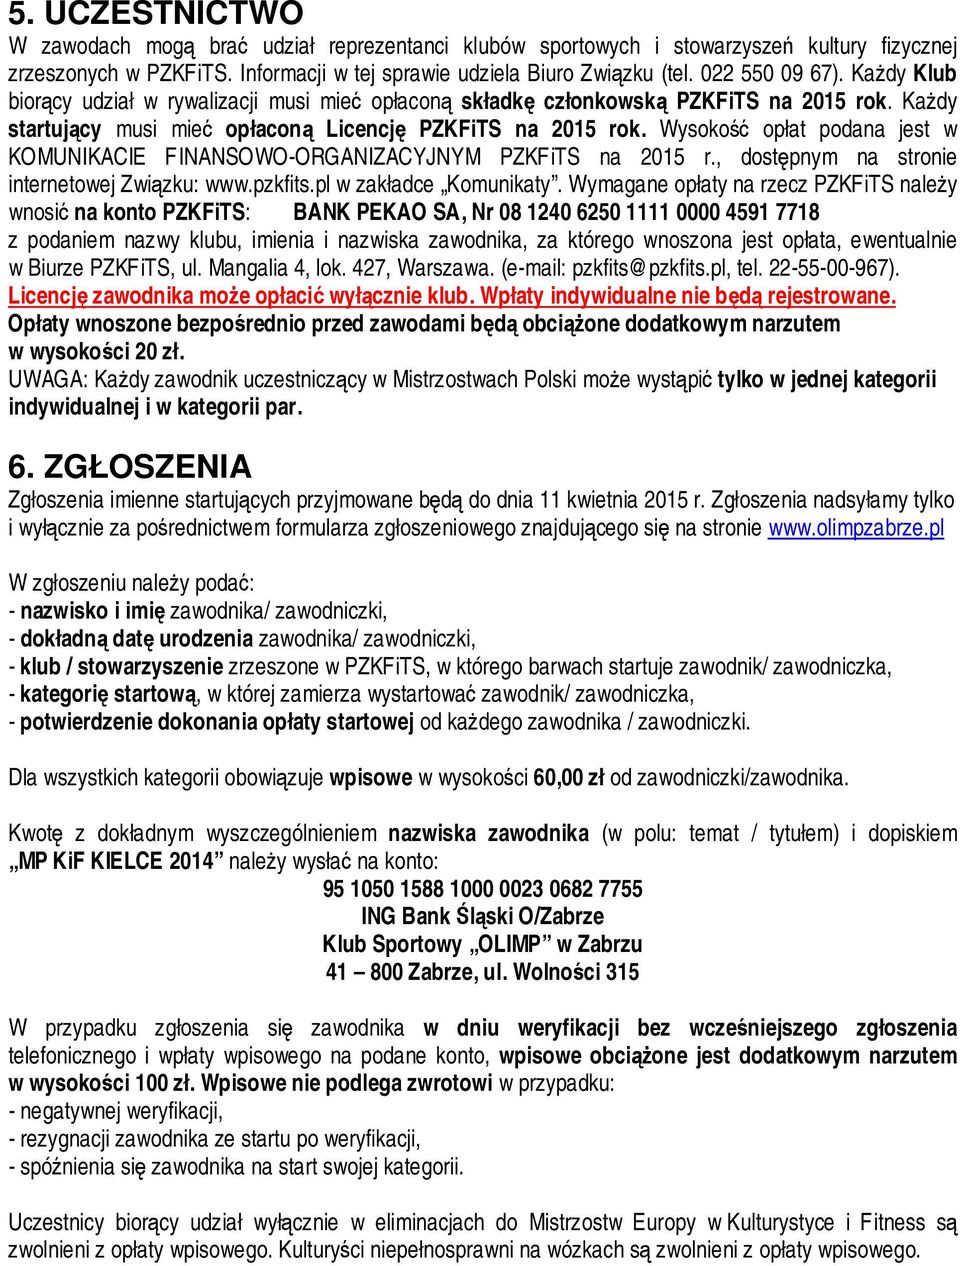 Wysokość opłat podana jest w KOMUNIKACIE FINANSOWO-ORGANIZACYJNYM PZKFiTS na 2015 r., dostępnym na stronie internetowej Związku: www.pzkfits.pl w zakładce Komunikaty.